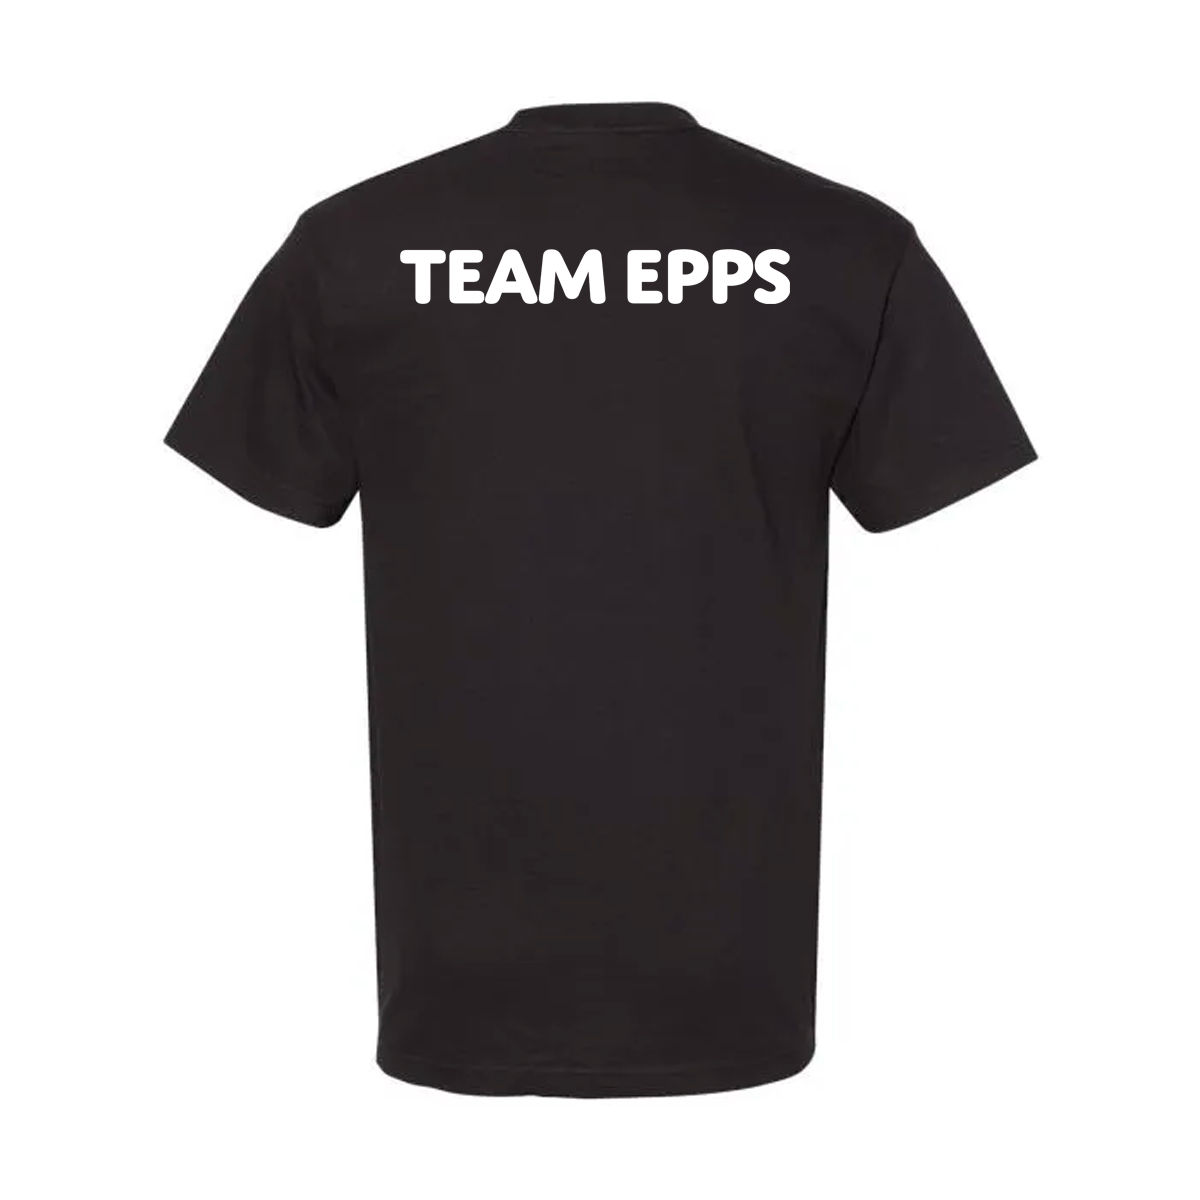 DJ EPPS - TEAM EPPS - OG Design